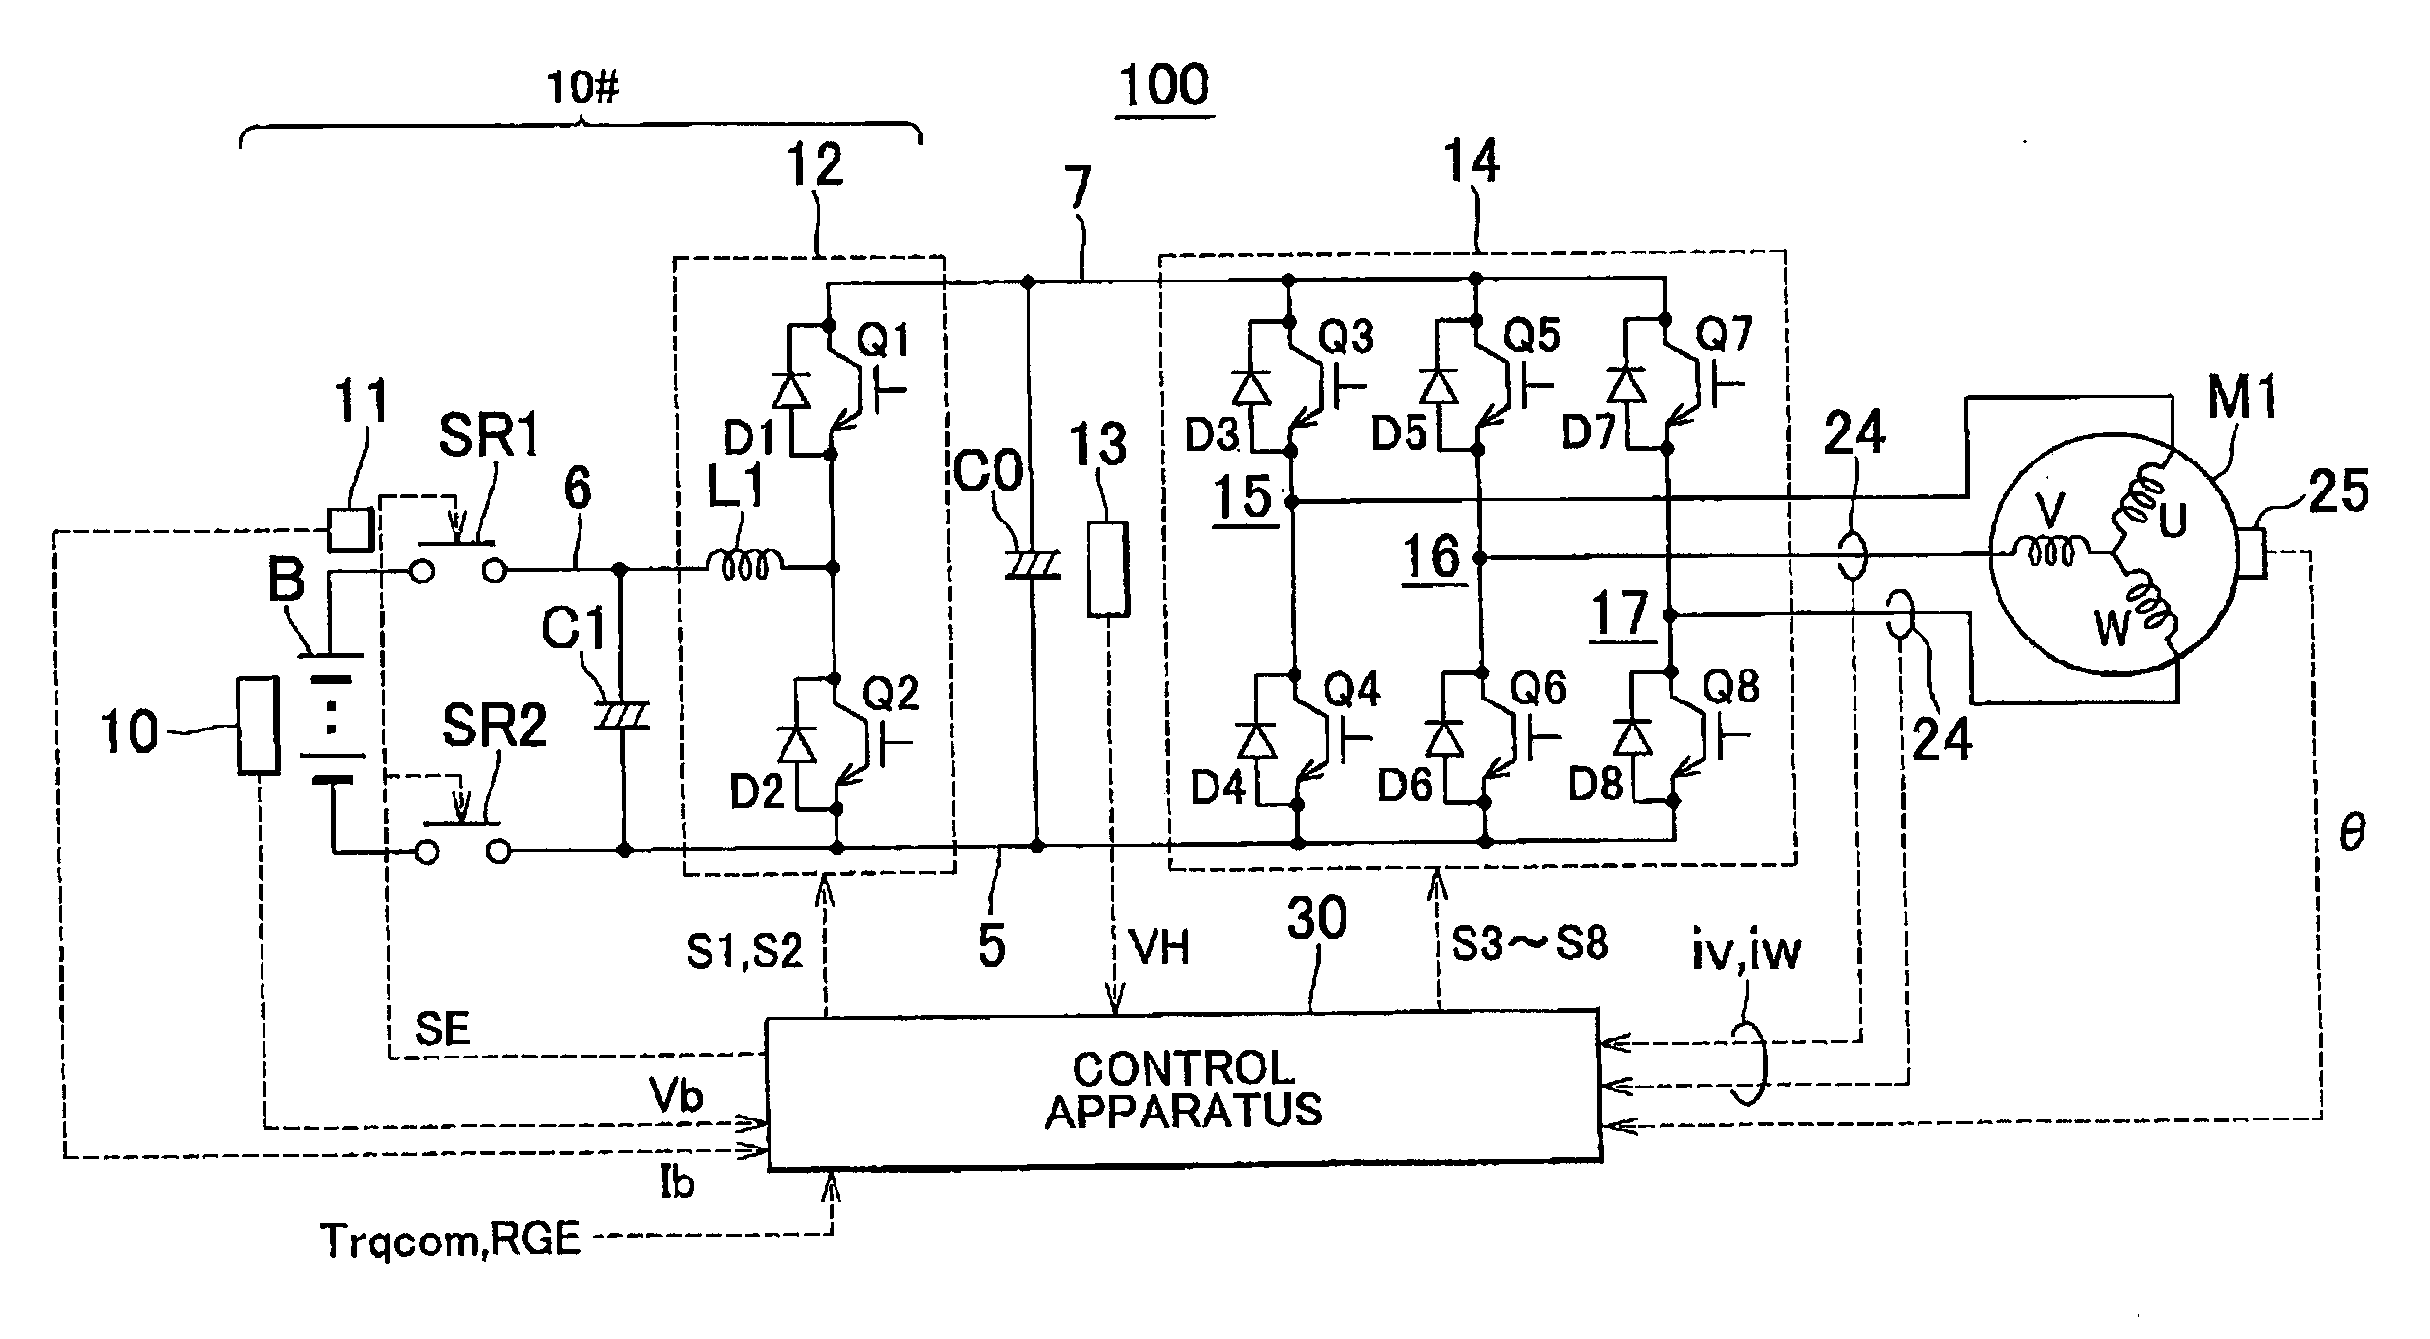 Alternating-current motor control apparatus